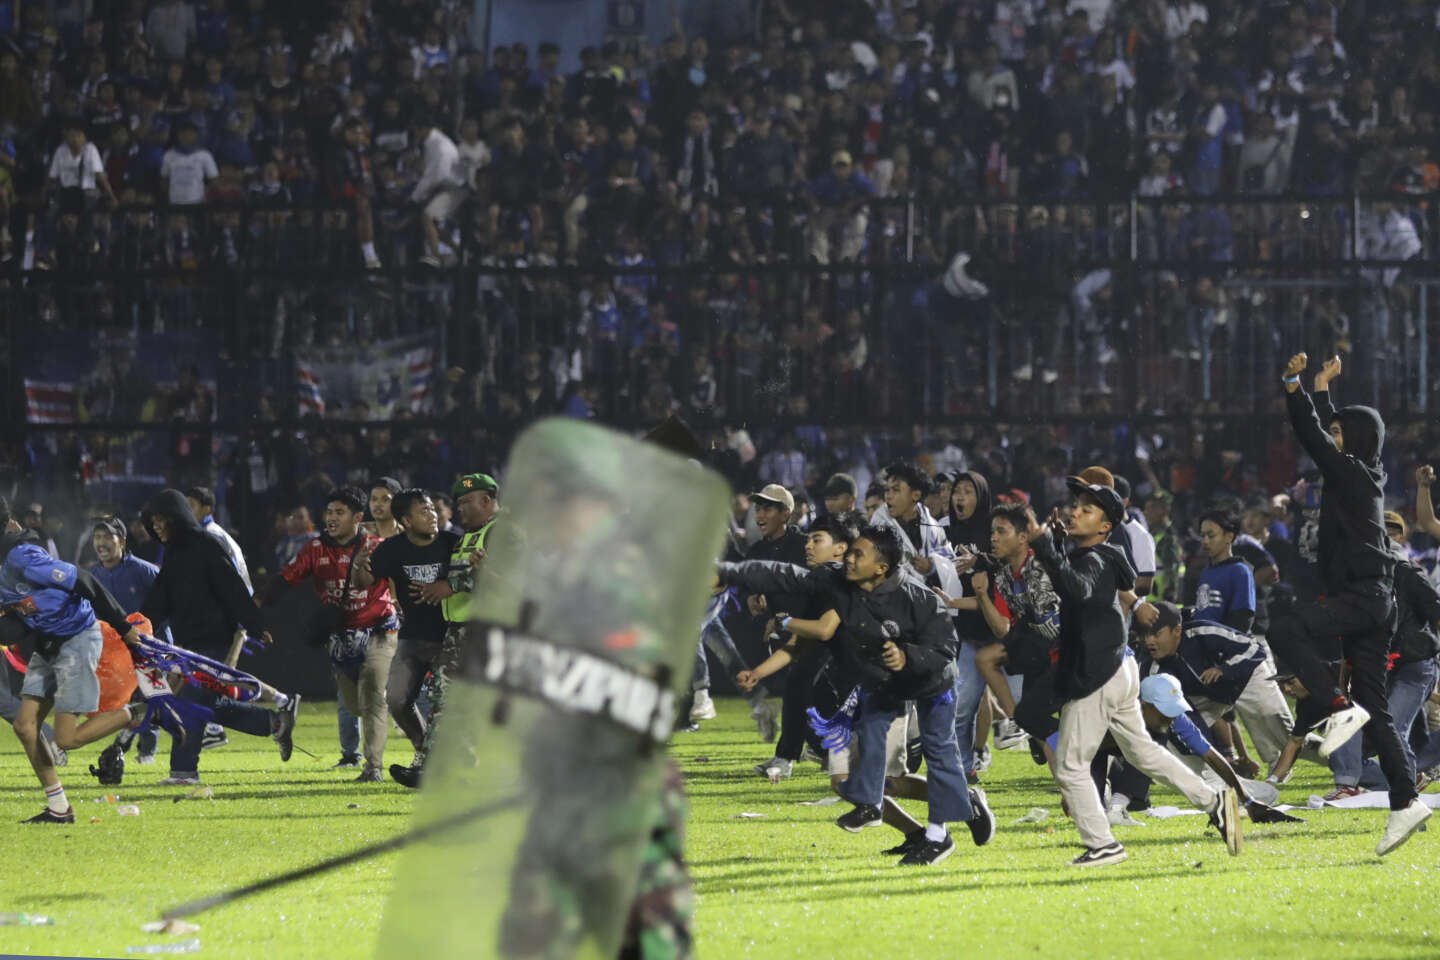 Indonésie : au moins 129 personnes sont mortes à la suite de bagarres et de mouvements de foule dans un stade de football